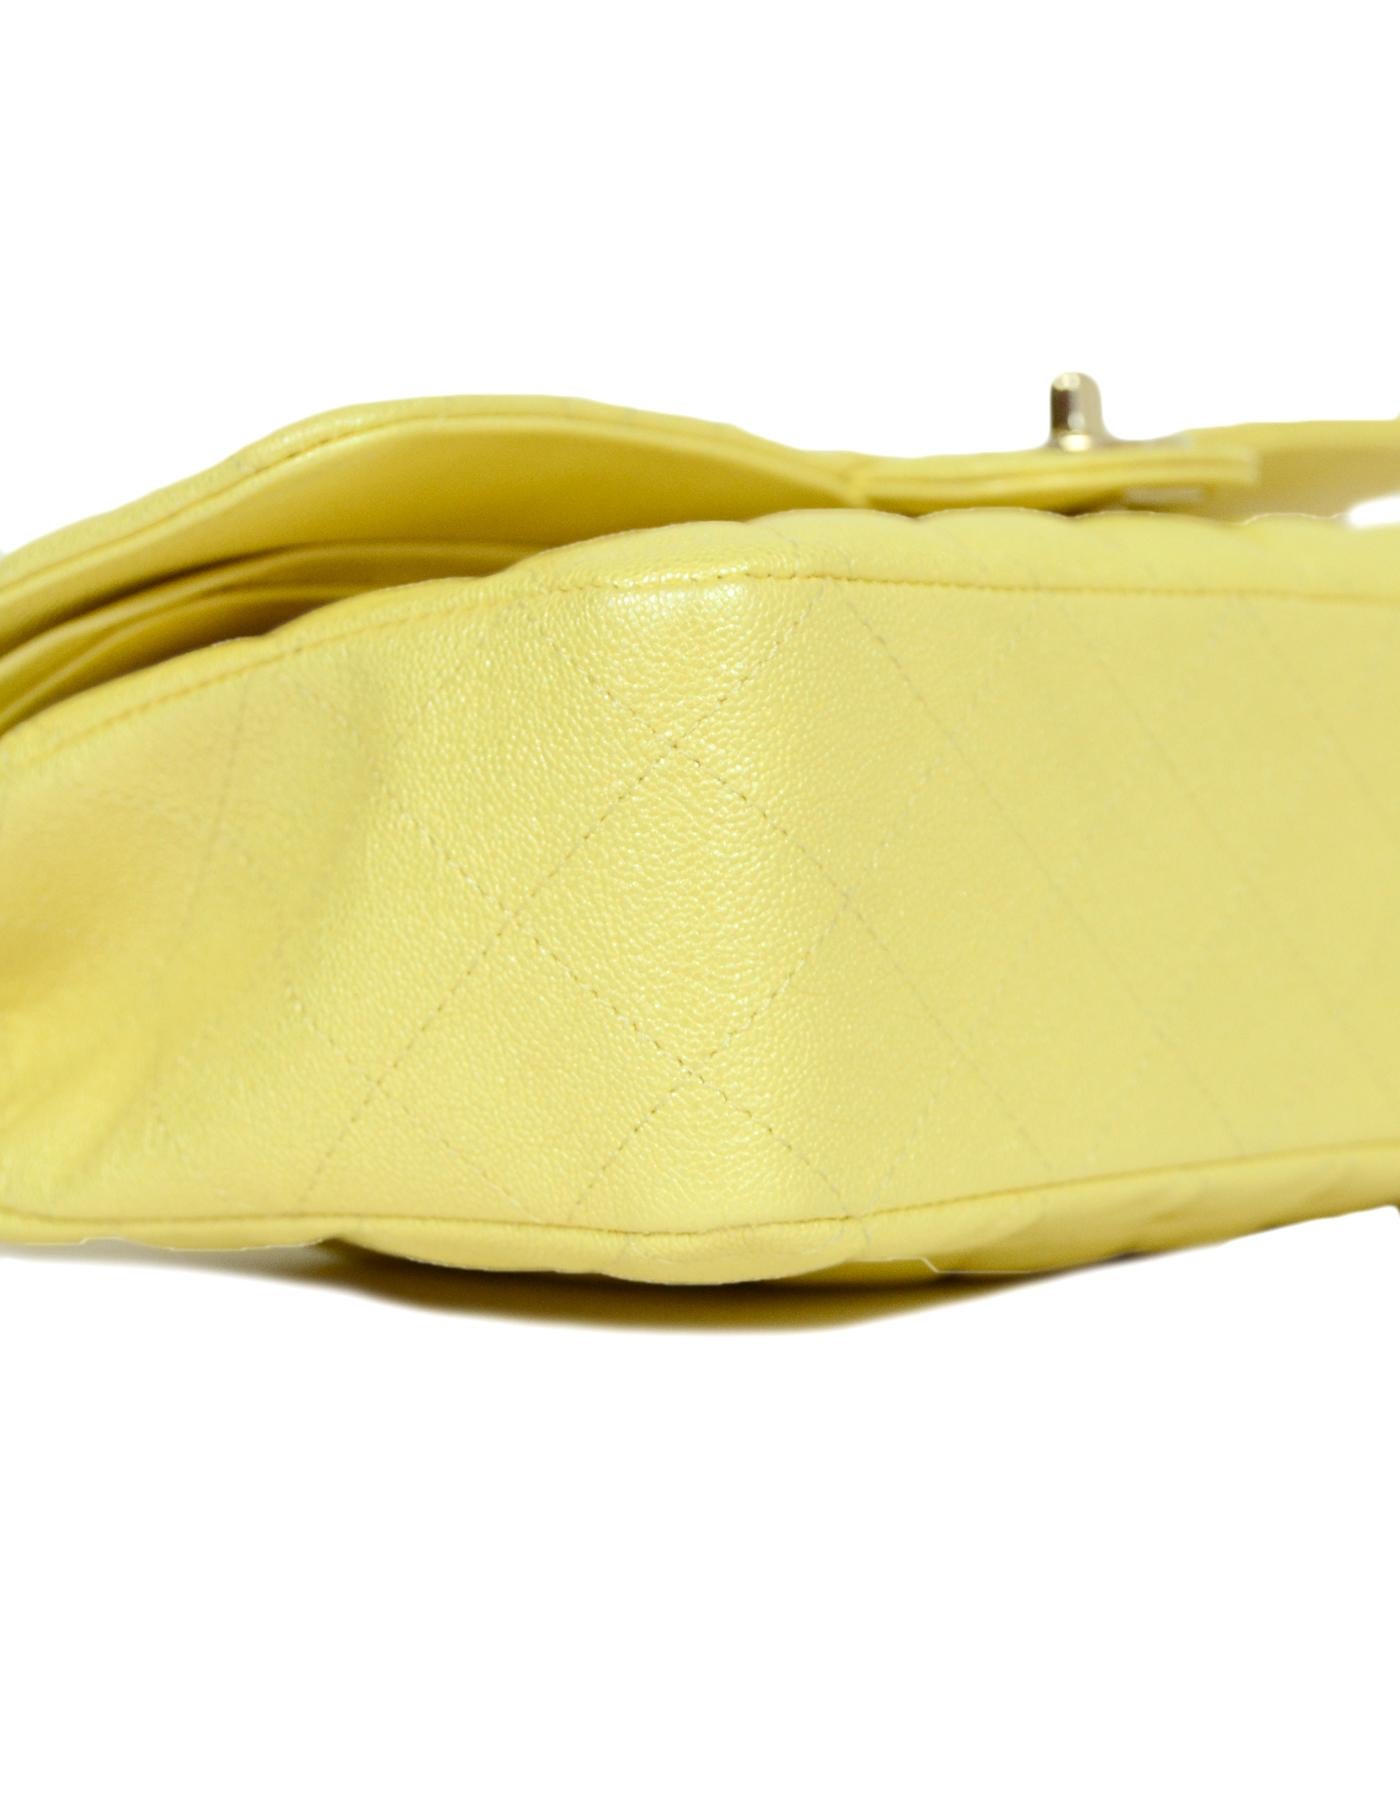 chanel yellow bag